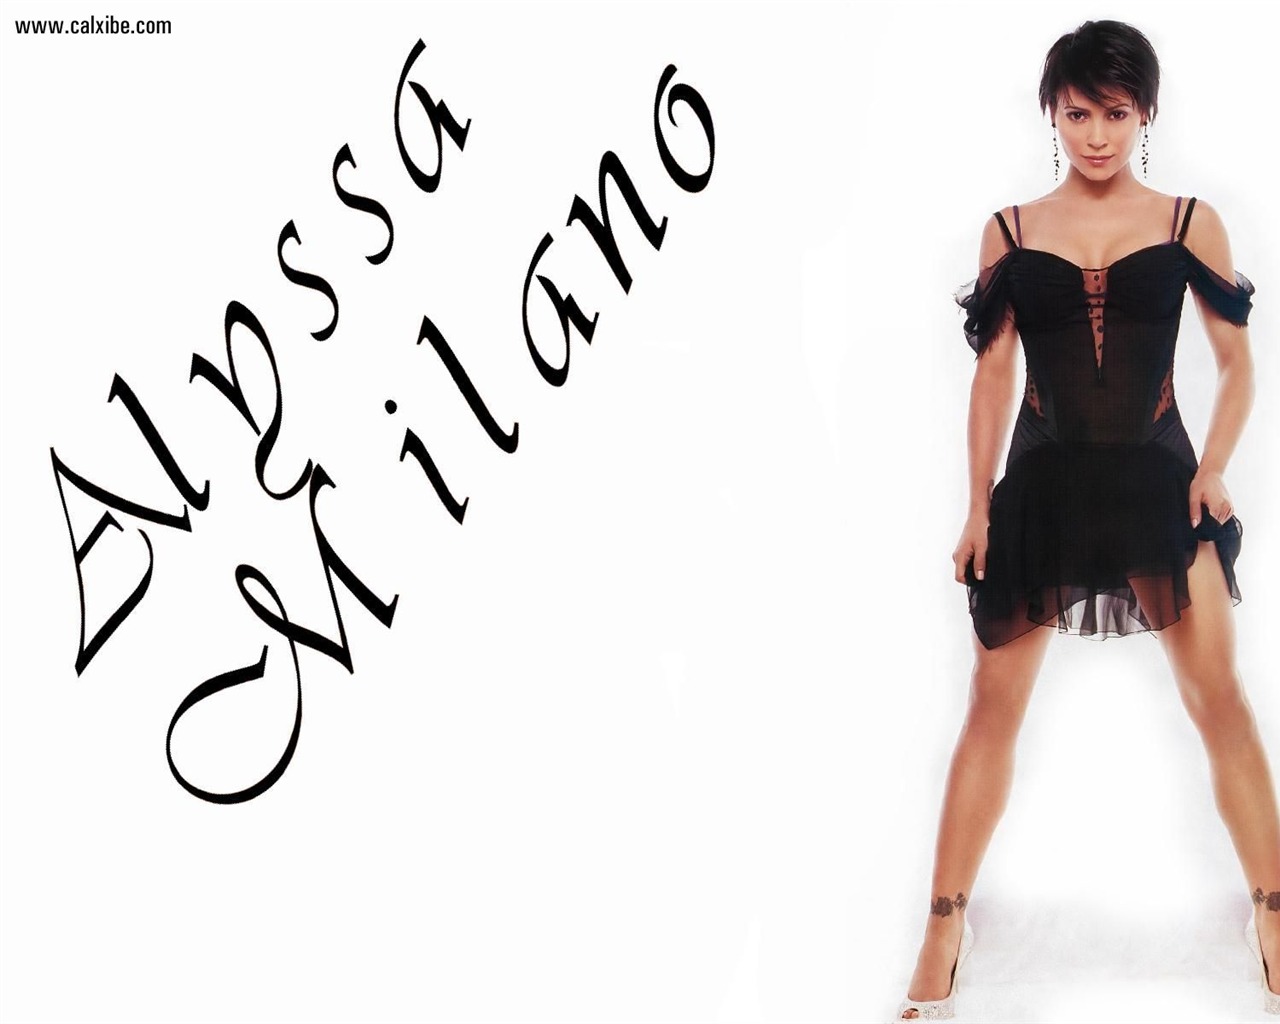 Alyssa Milano 艾莉莎·米兰诺 美女壁纸(二)25 - 1280x1024